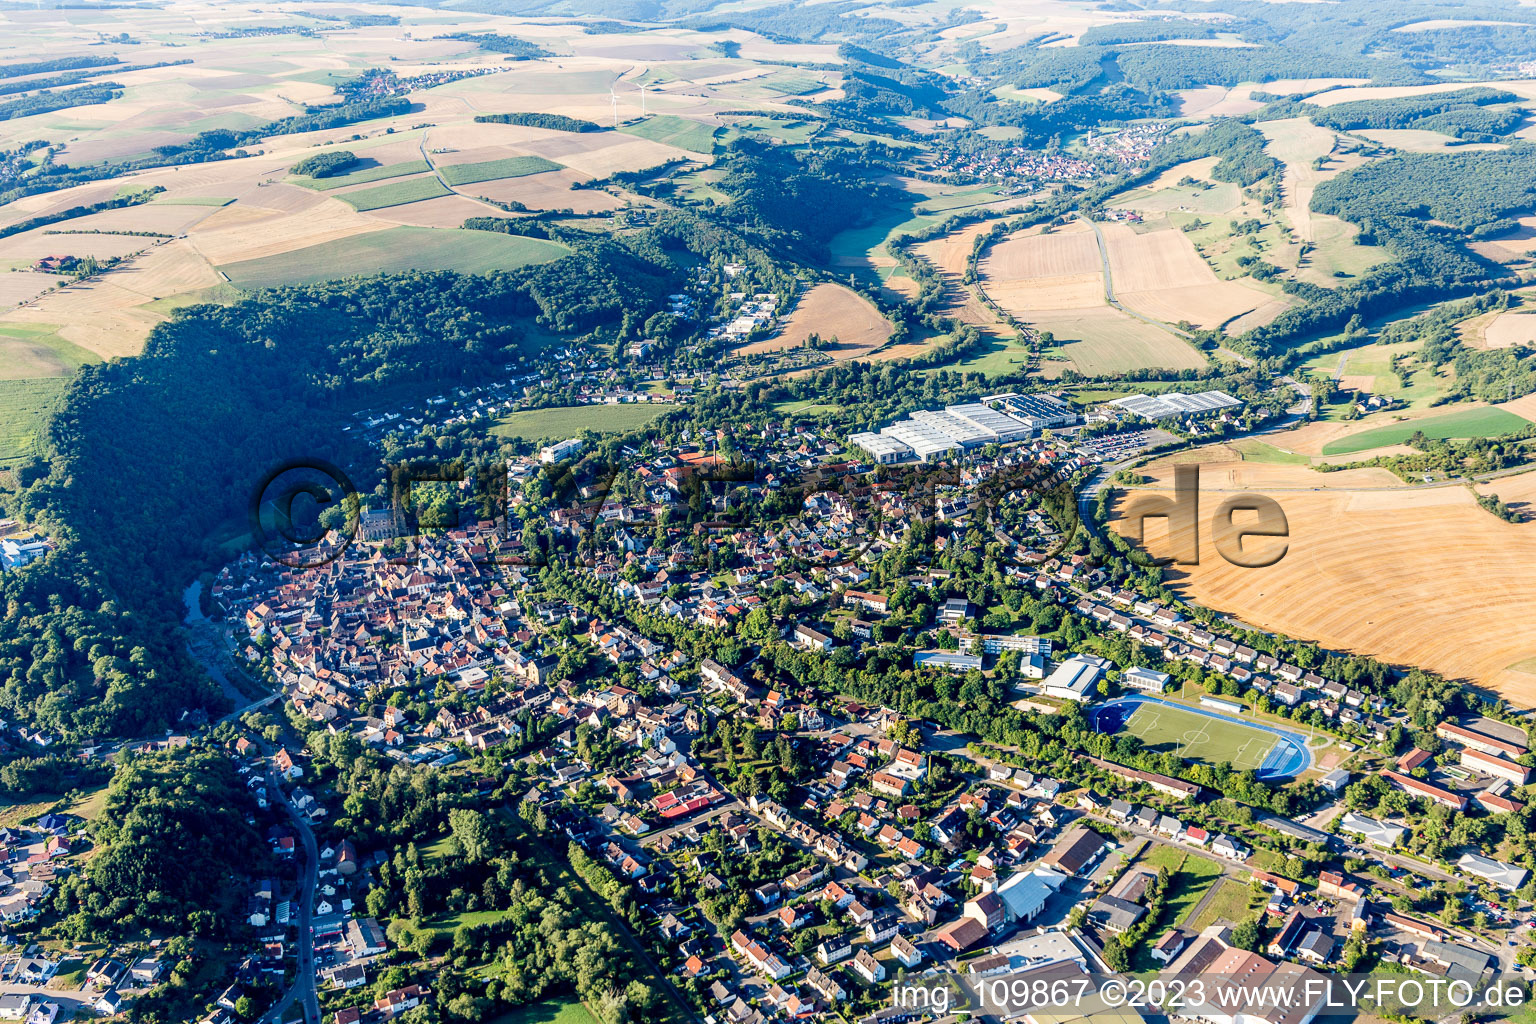 Meisenheim im Bundesland Rheinland-Pfalz, Deutschland aus der Luft betrachtet